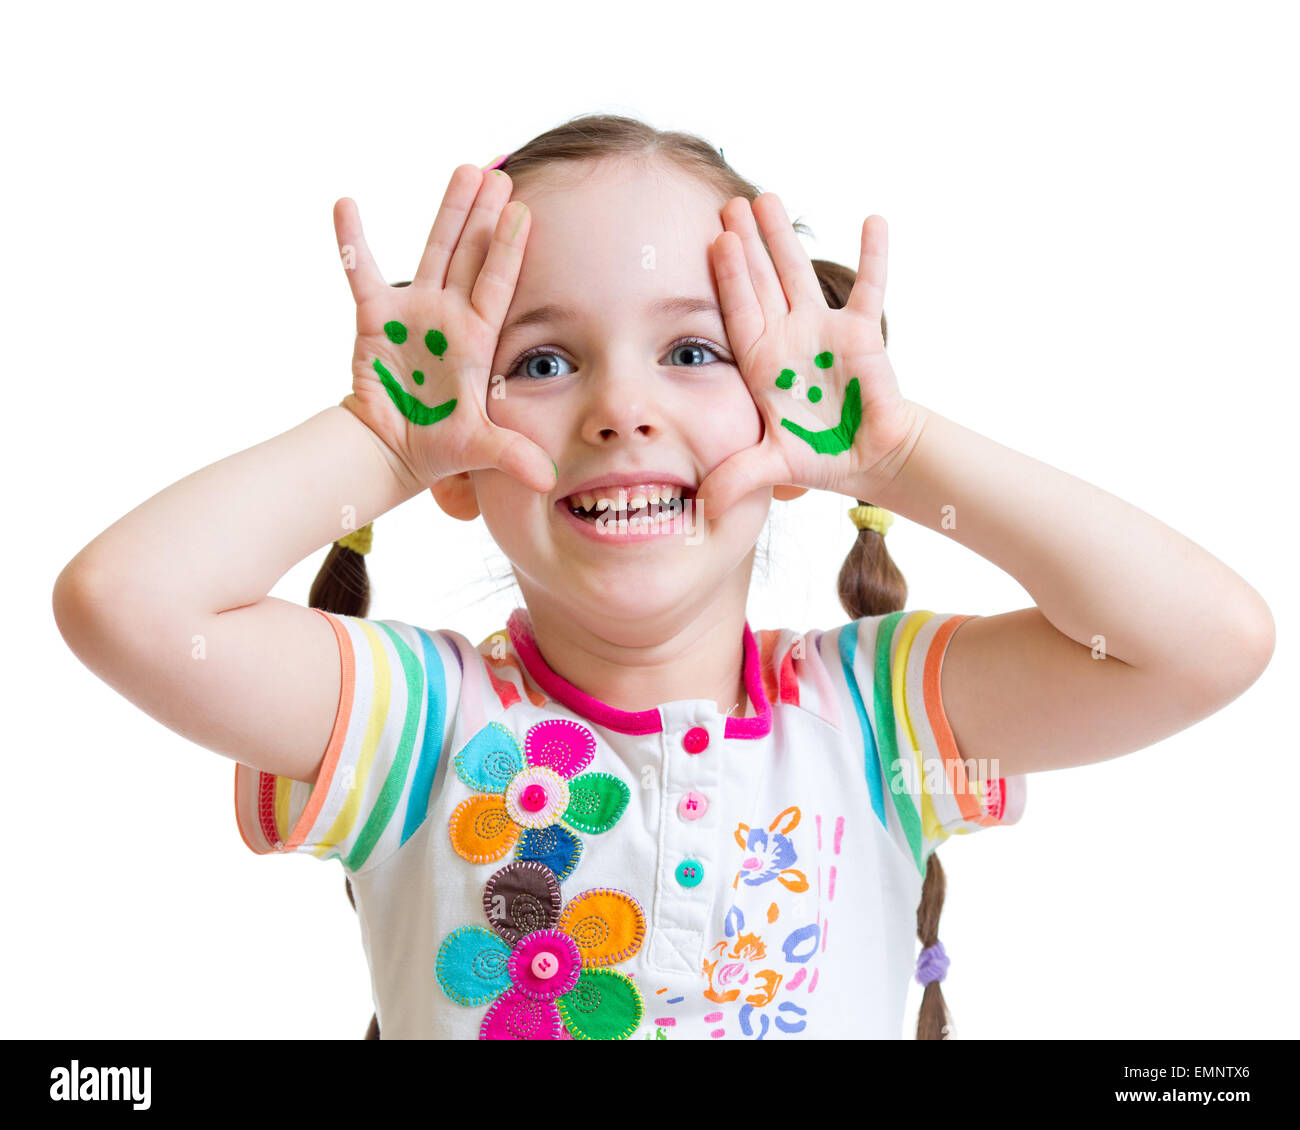 Happy kid girl montrant les mains peintes avec drôle de visage Banque D'Images